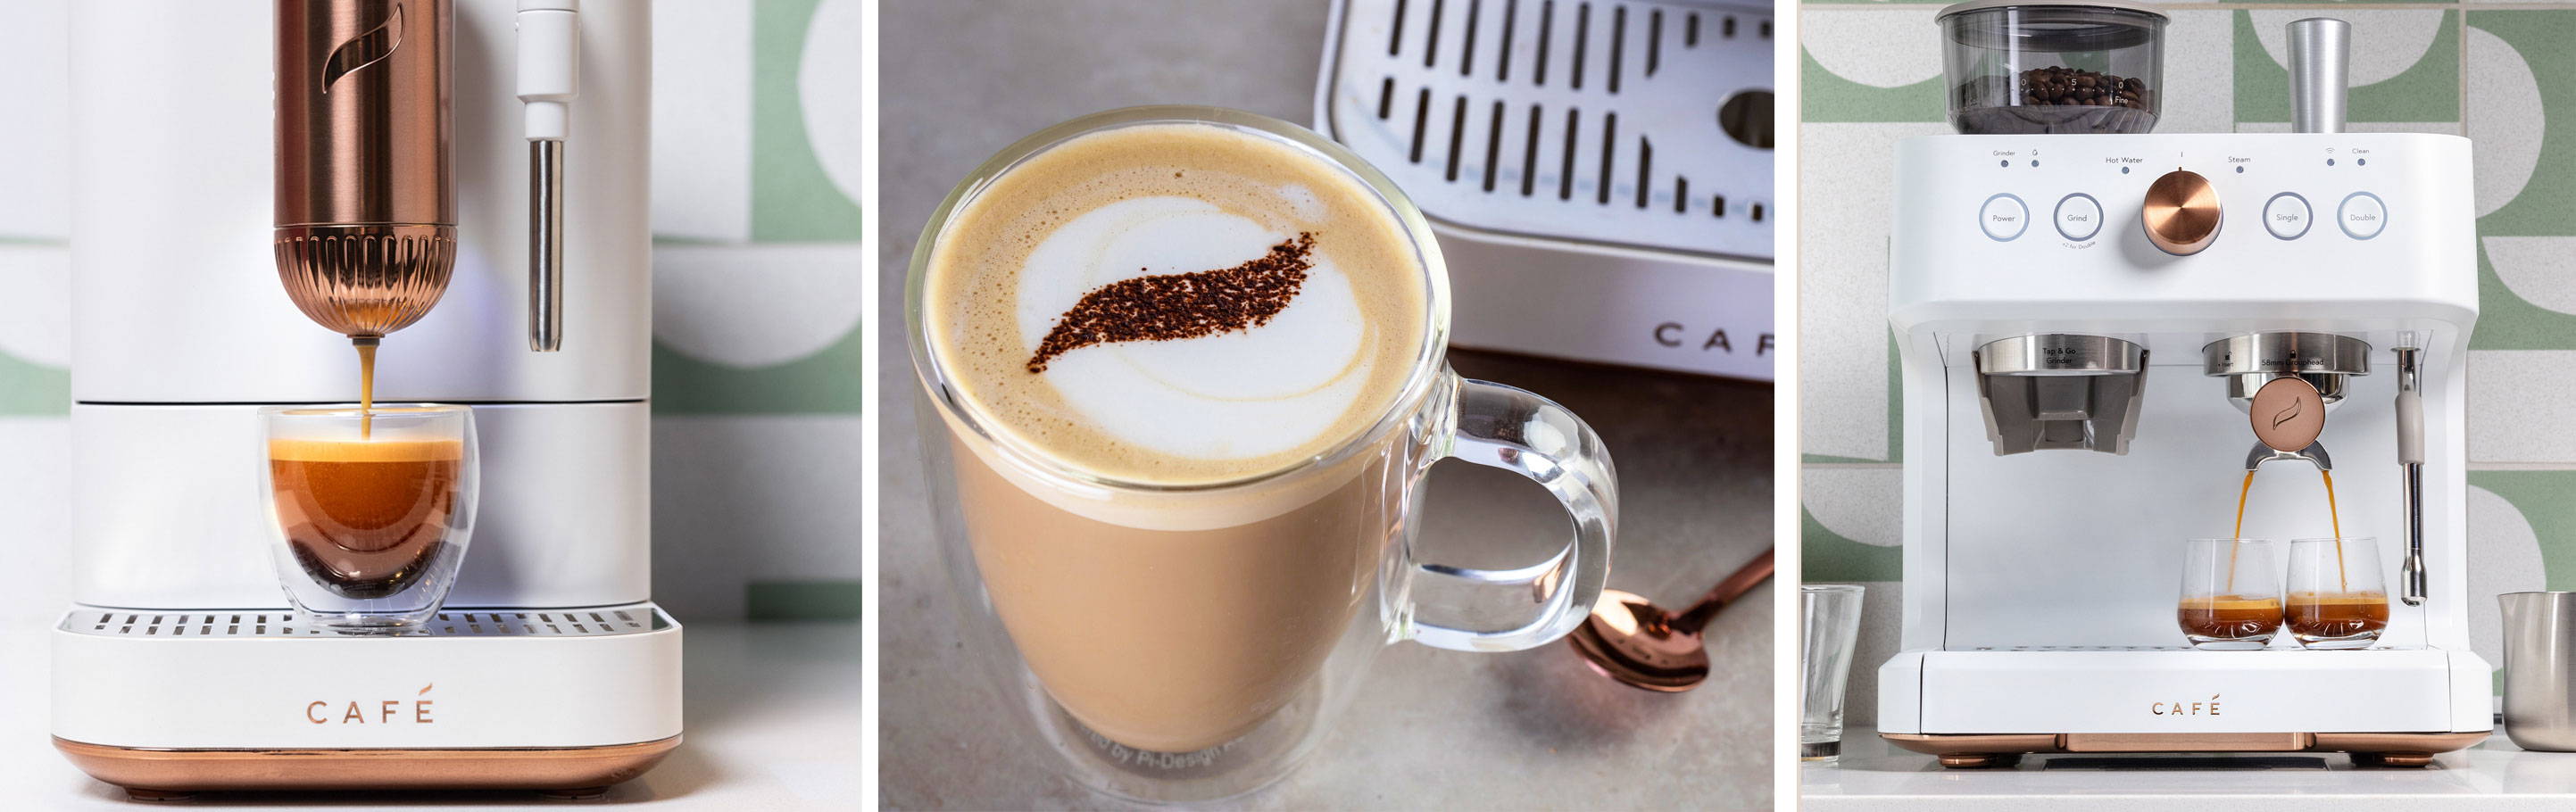 3 images: Affetto Automatic Espresso Machine, coffee cup with coco powder design, Bellisimo Semi-Auto Espresso Machine 